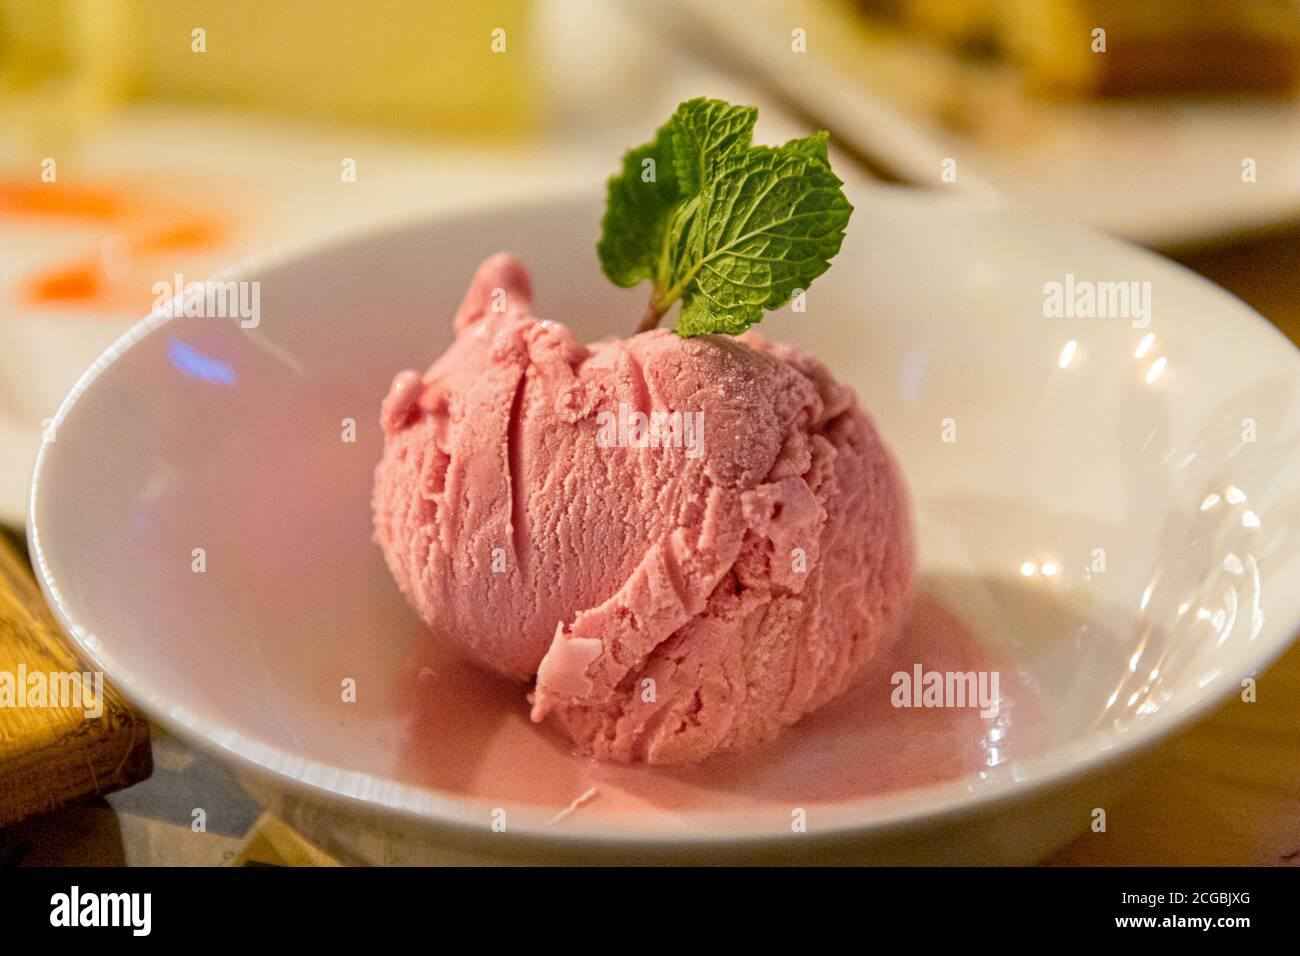 Una palla di gelato alla fragola con una foglia di menta è sul piatto. Foto Stock